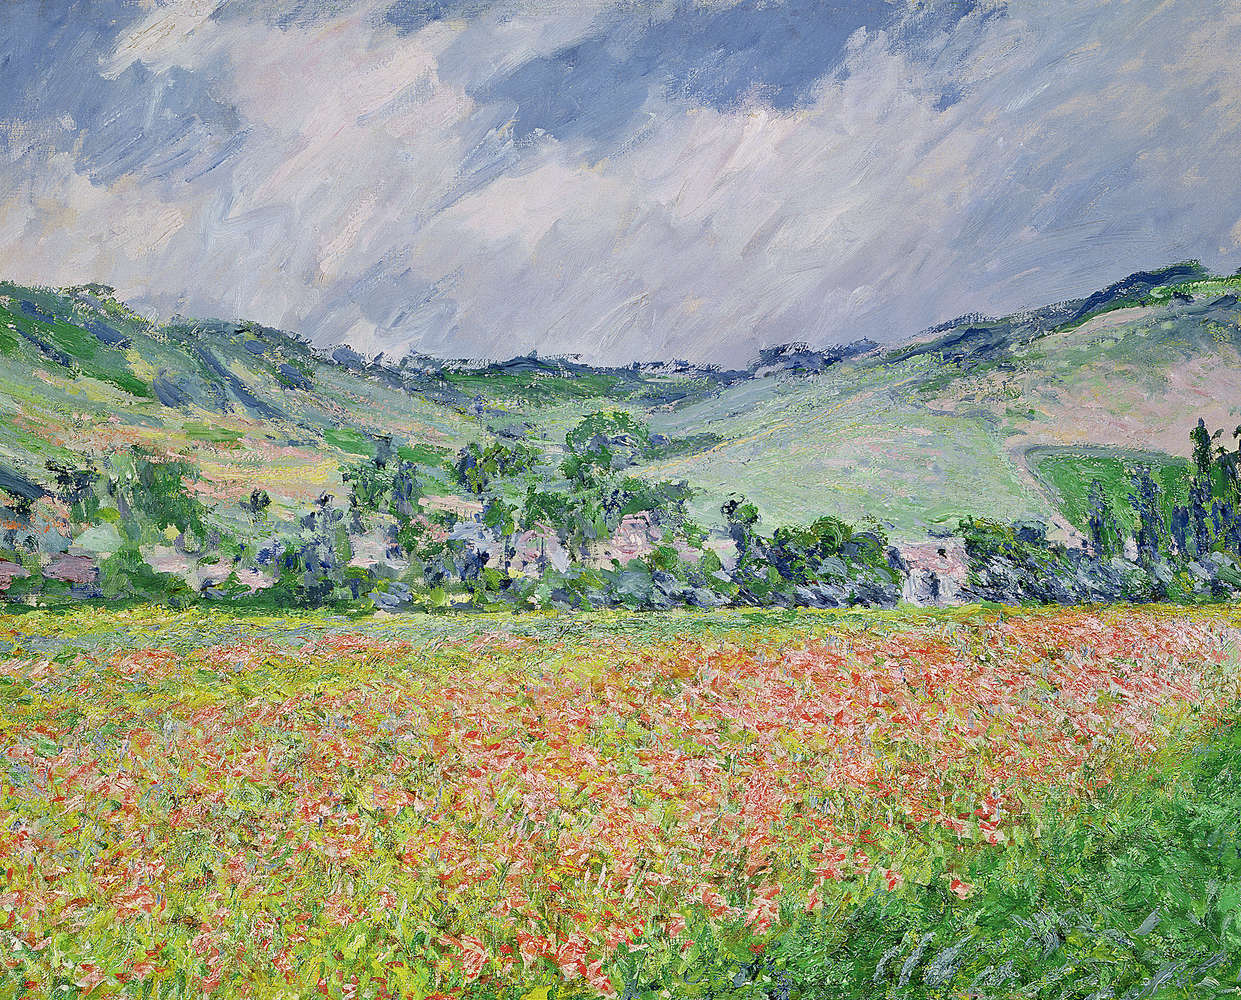             Muurschildering "Het klaprozenveld bij Giverny" van Claude Monet
        